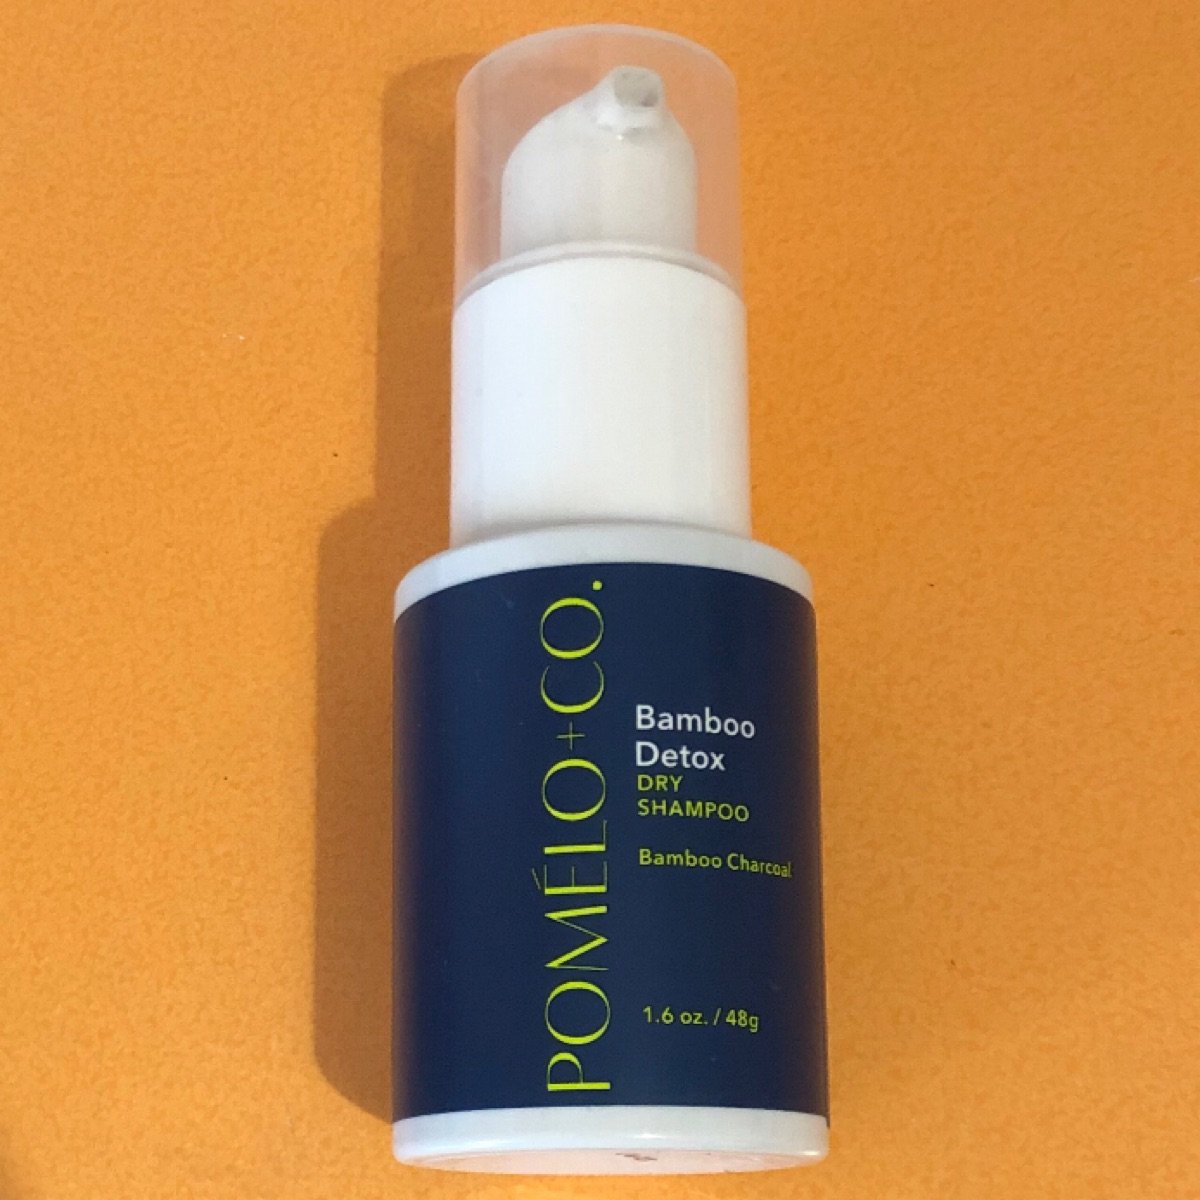 POMELO+CO. Bamboo Detox - Dry Shampoo Reviews | abillion